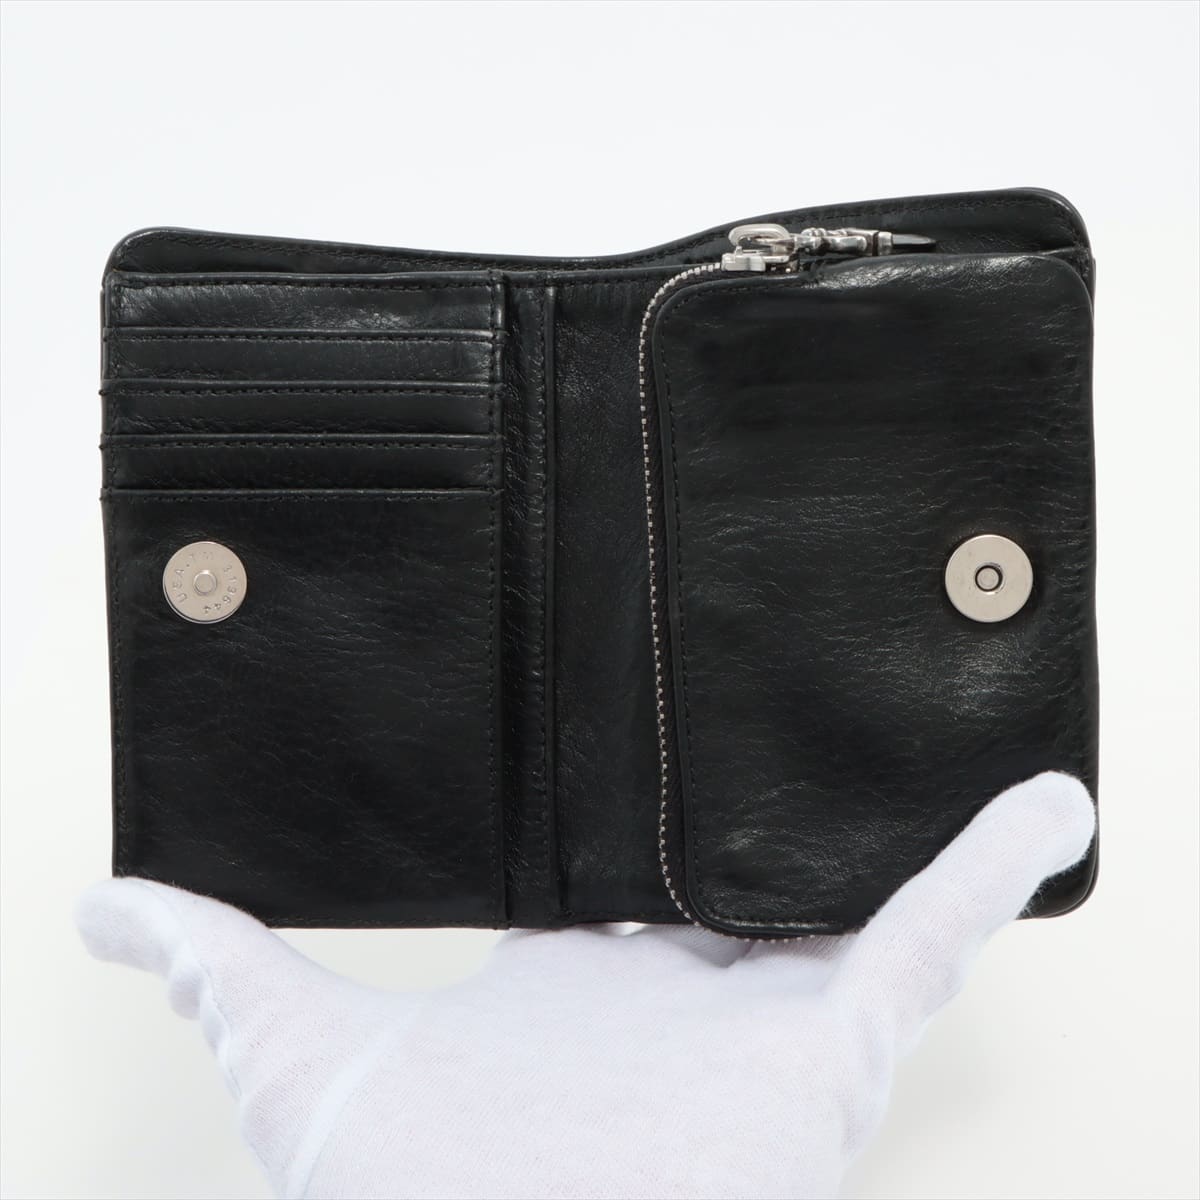 クロムハーツ ジョーイスクロール ウォレット 二つ折り財布 レザー×925 インボイスアリ ブラック ダガージップ